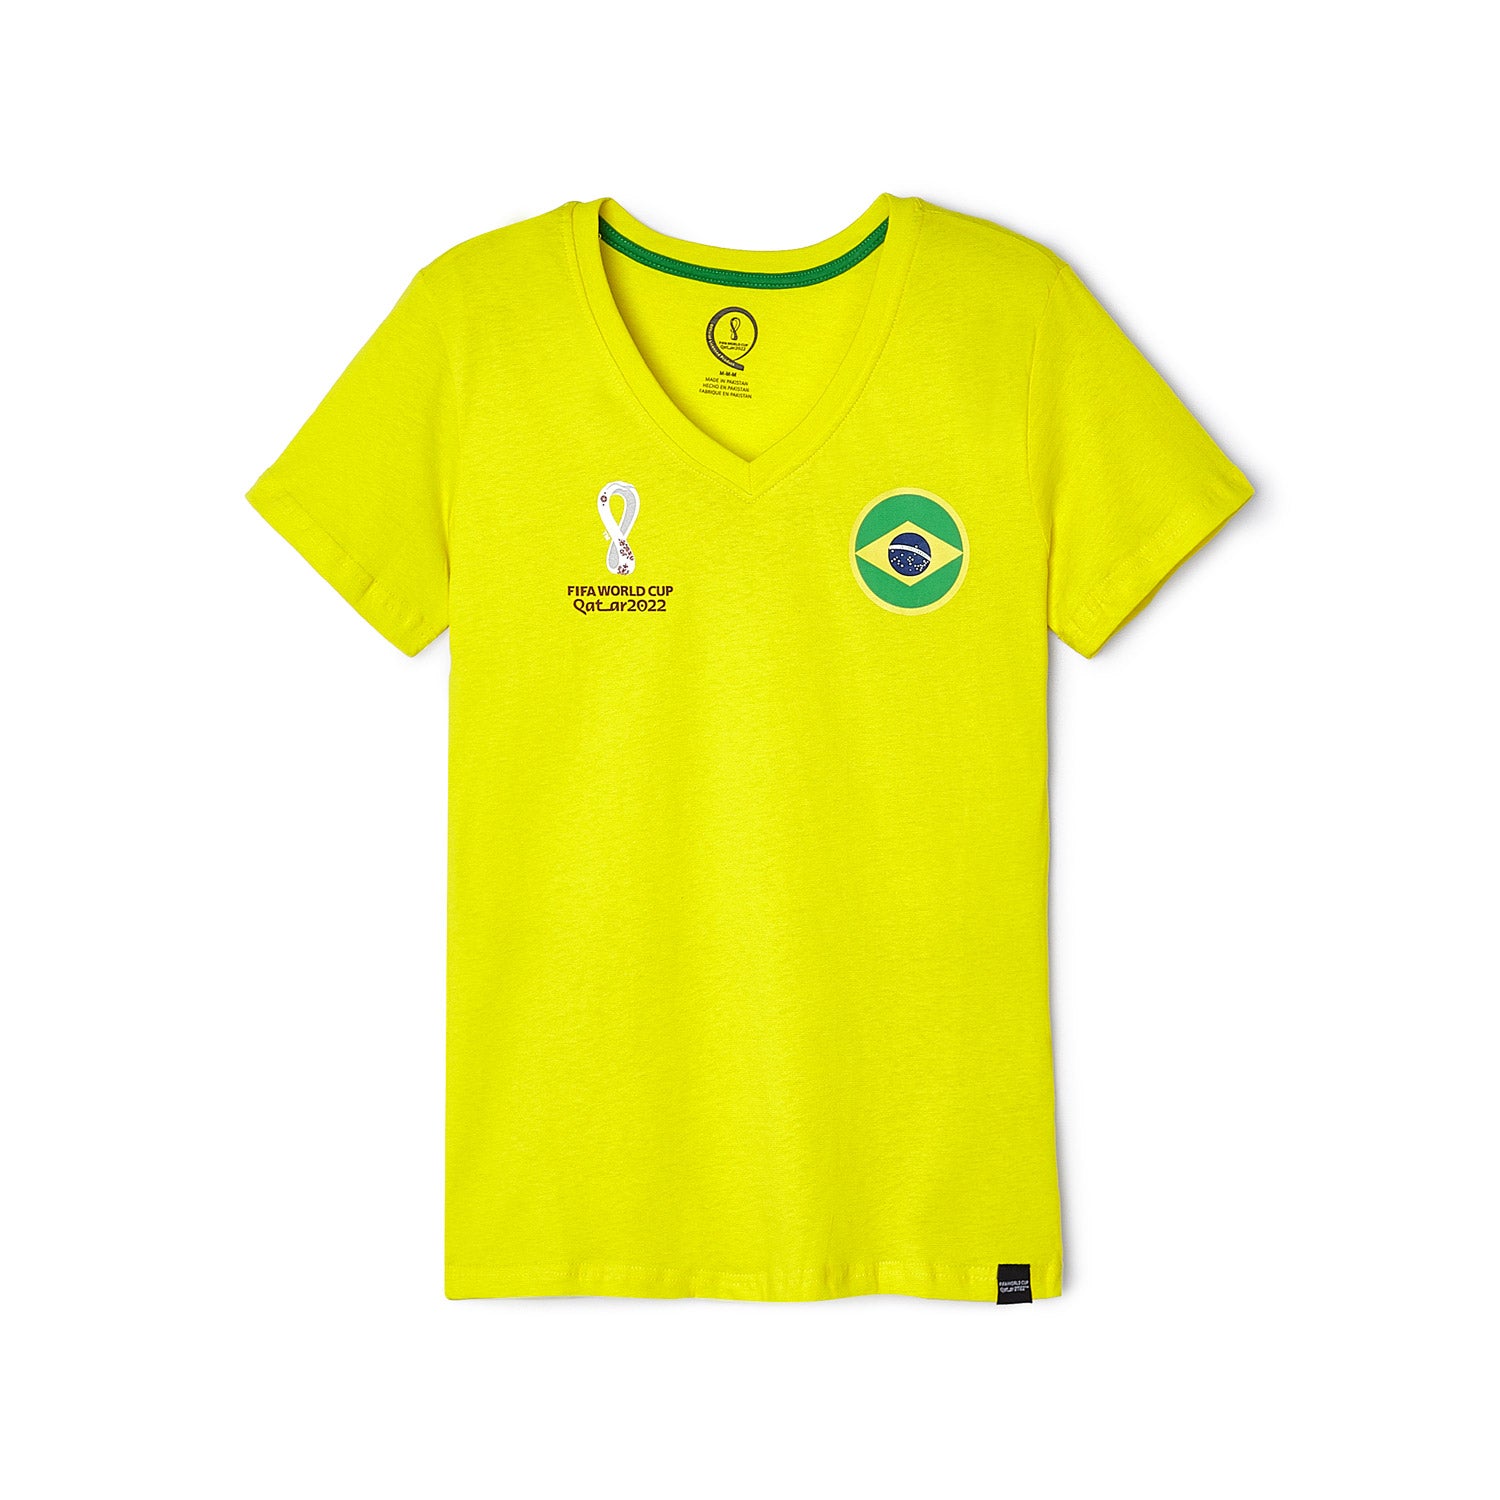 2022 World Cup Brazil Yellow T-Shirt - Women's - Official FIFA Store